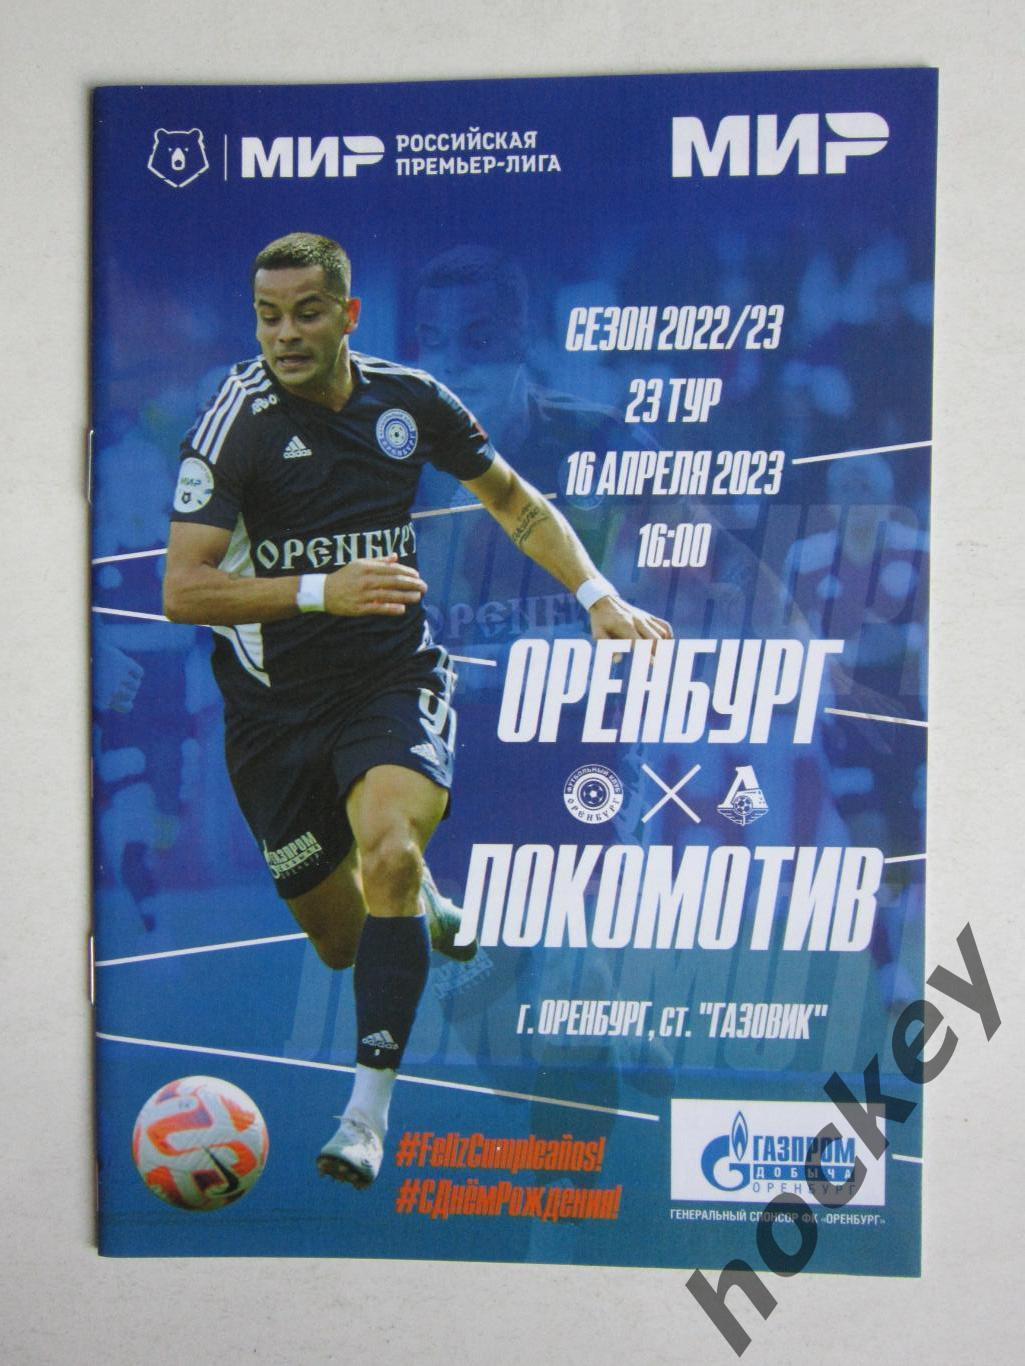 Оренбург - Локомотив Москва 16.04.2023. Постер Матиас Перес